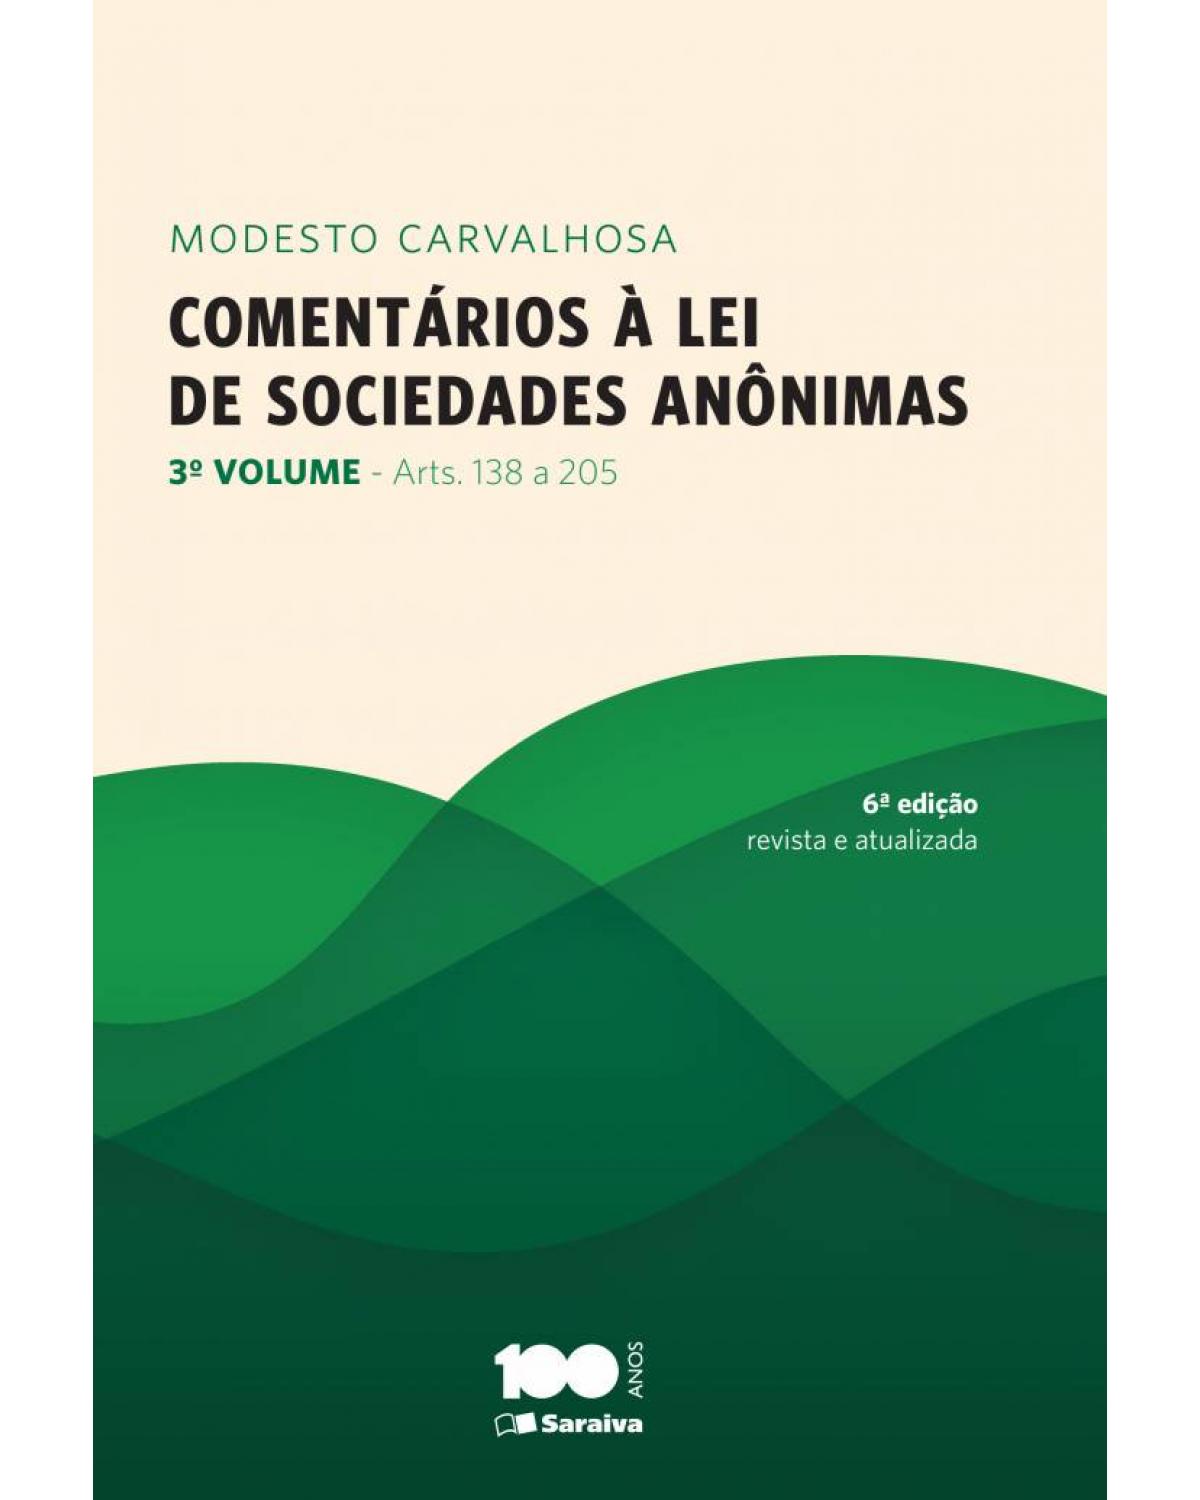 Comentários à lei de sociedades anônimas - Volume 3: arts. 138 a 205 - 6ª Edição | 2014